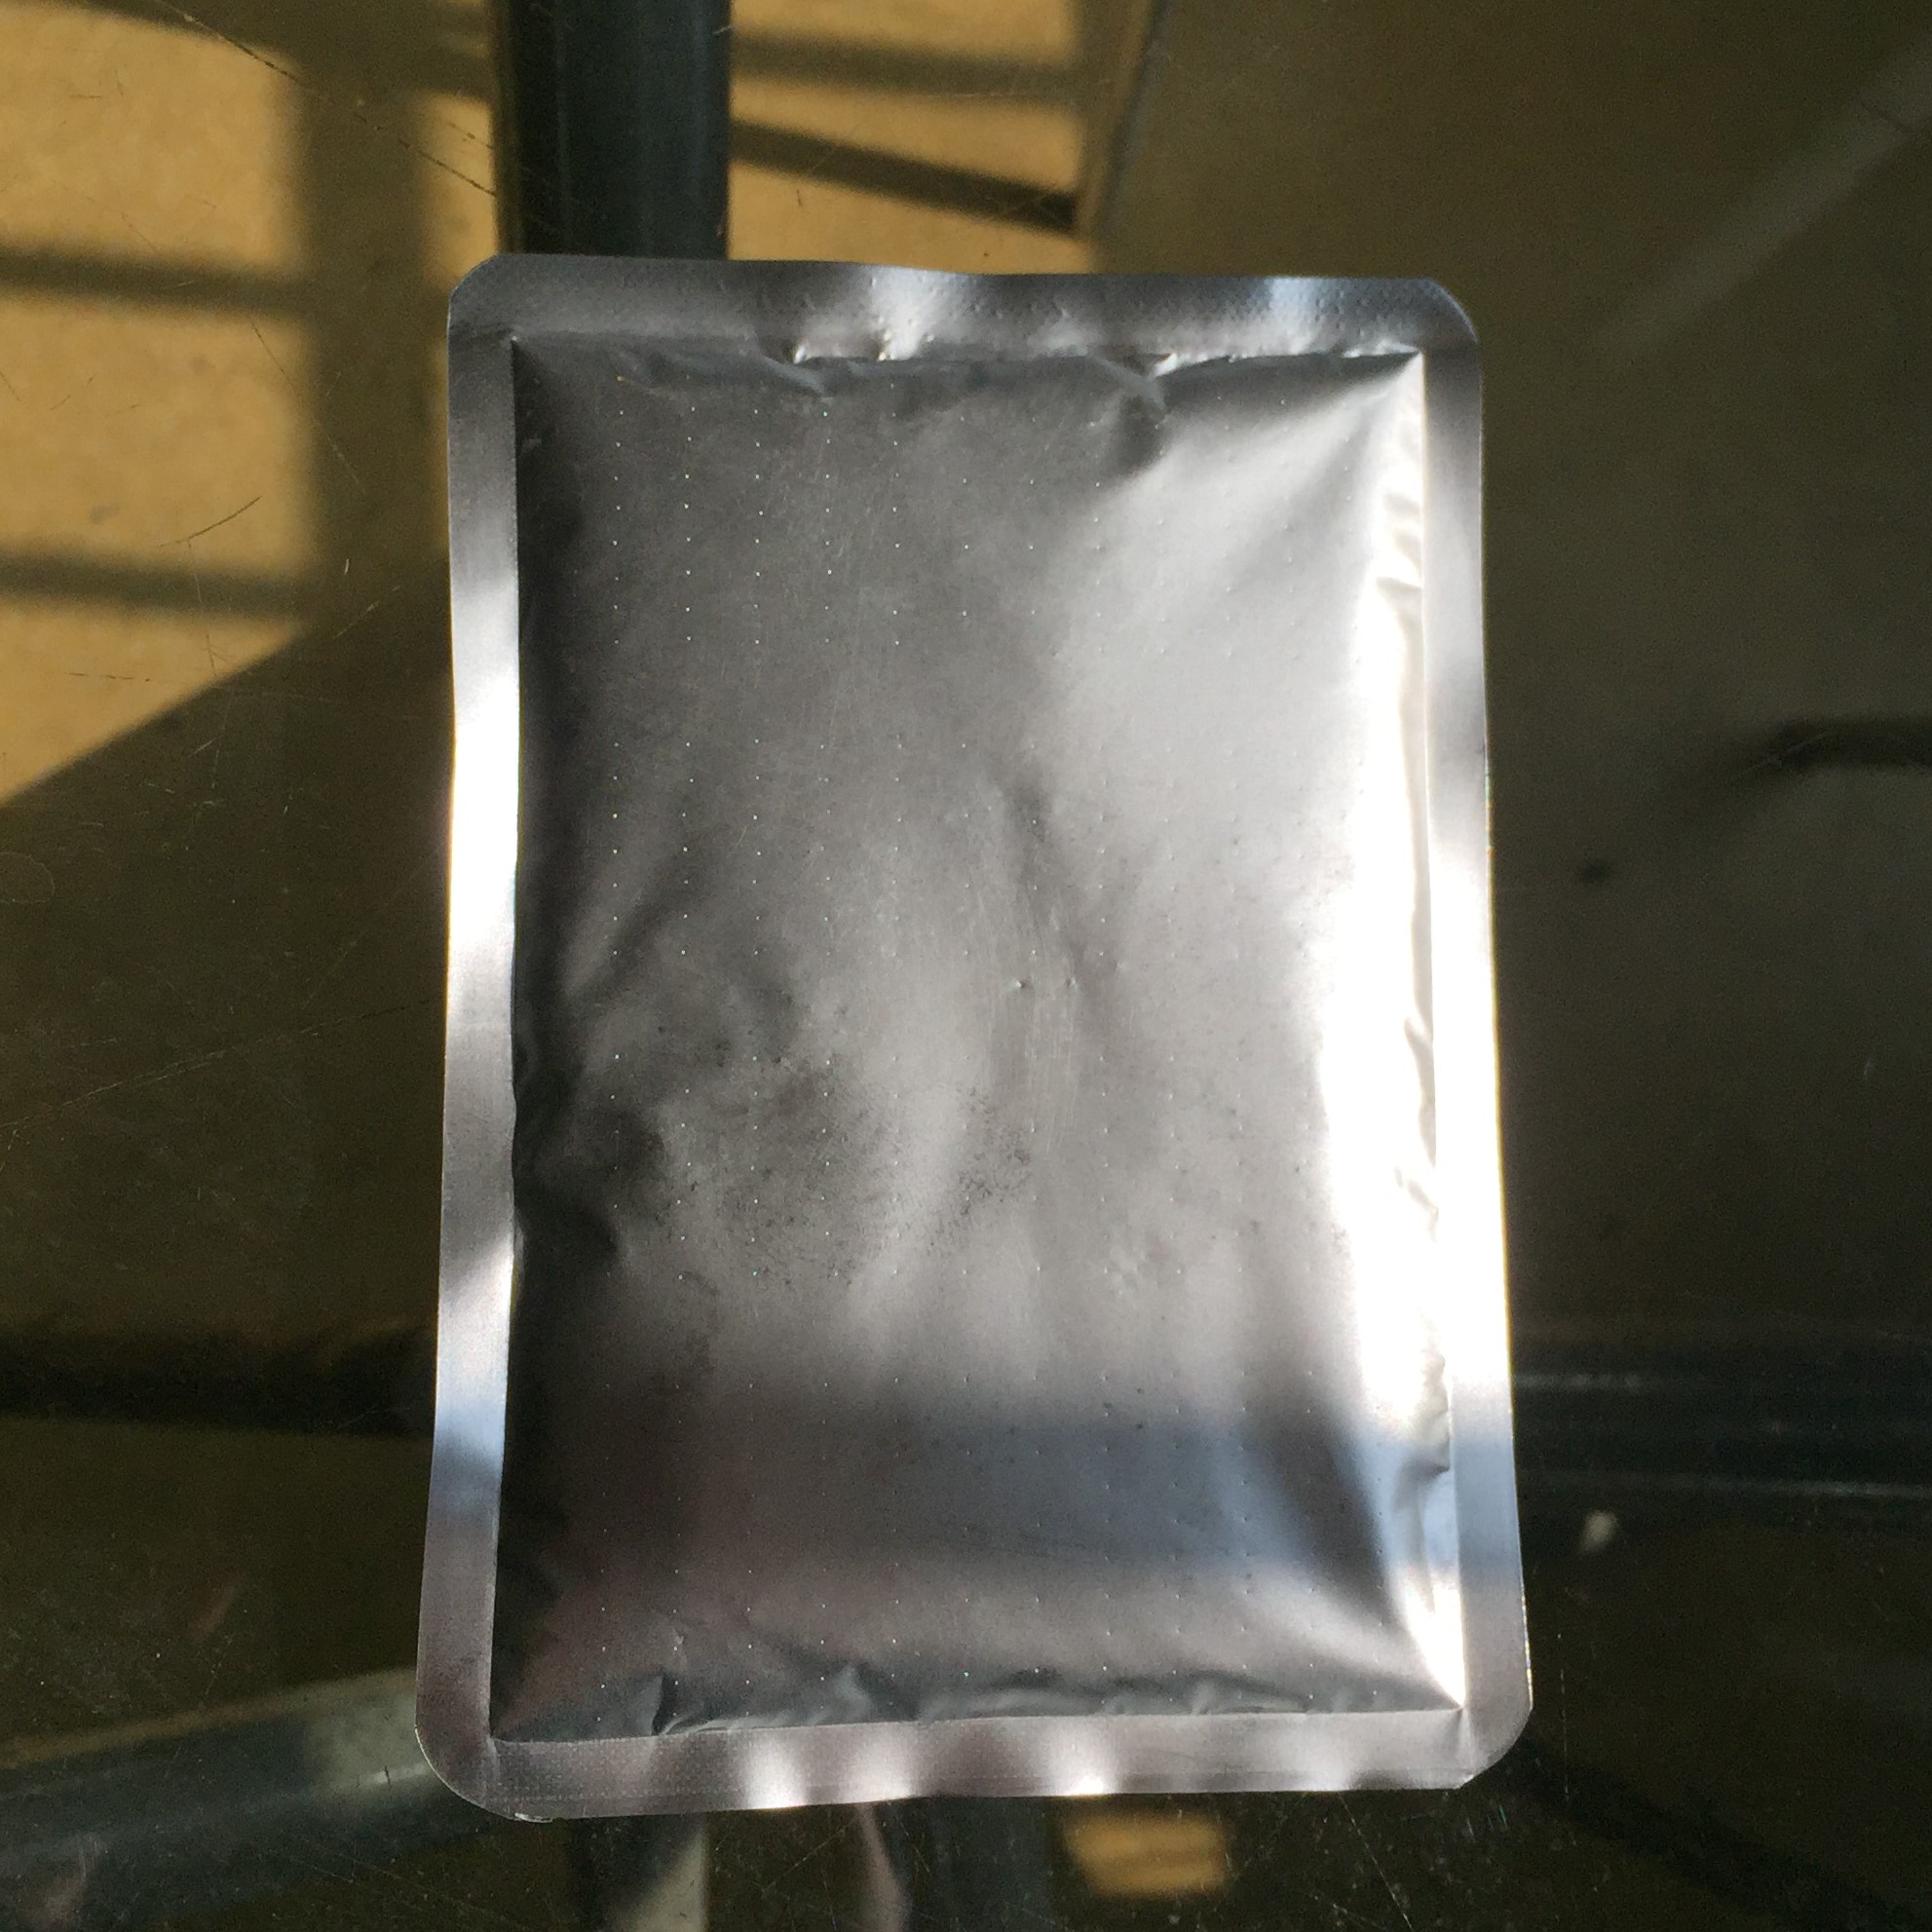 40 Hours Heat Pack In Aluminum Foil Inner Pack 